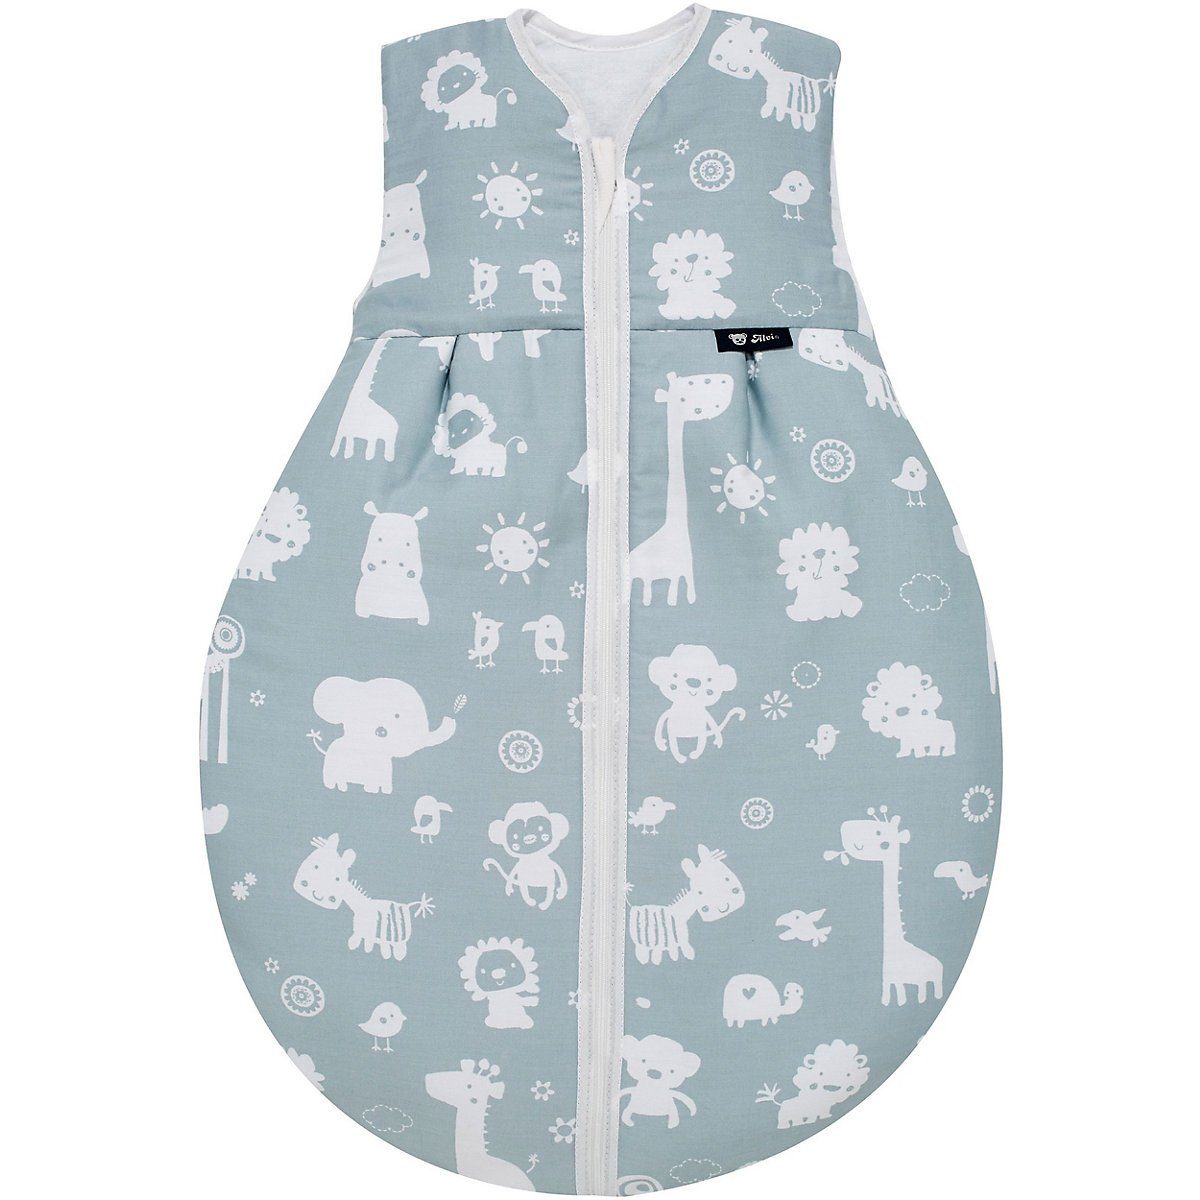 MyToys-COLLECTION Babyschlafsack »Schlafsack Thermo, Zootiere blau, 90 cm  von Alvi« online kaufen | OTTO